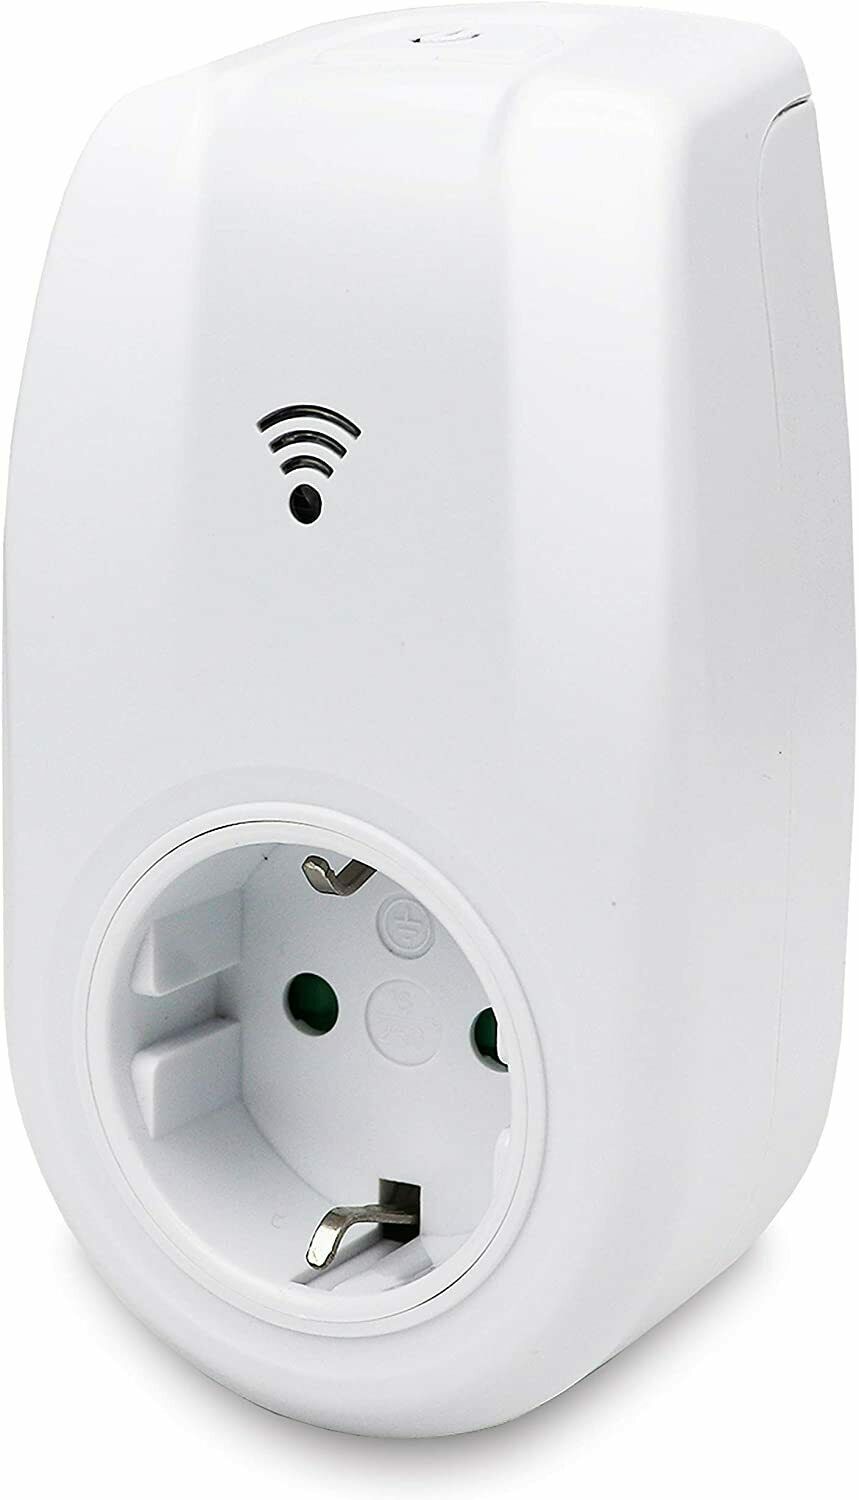 Enchufe Wifi, Inalámbric Mini Monitor del Interruptor con Control Remoto